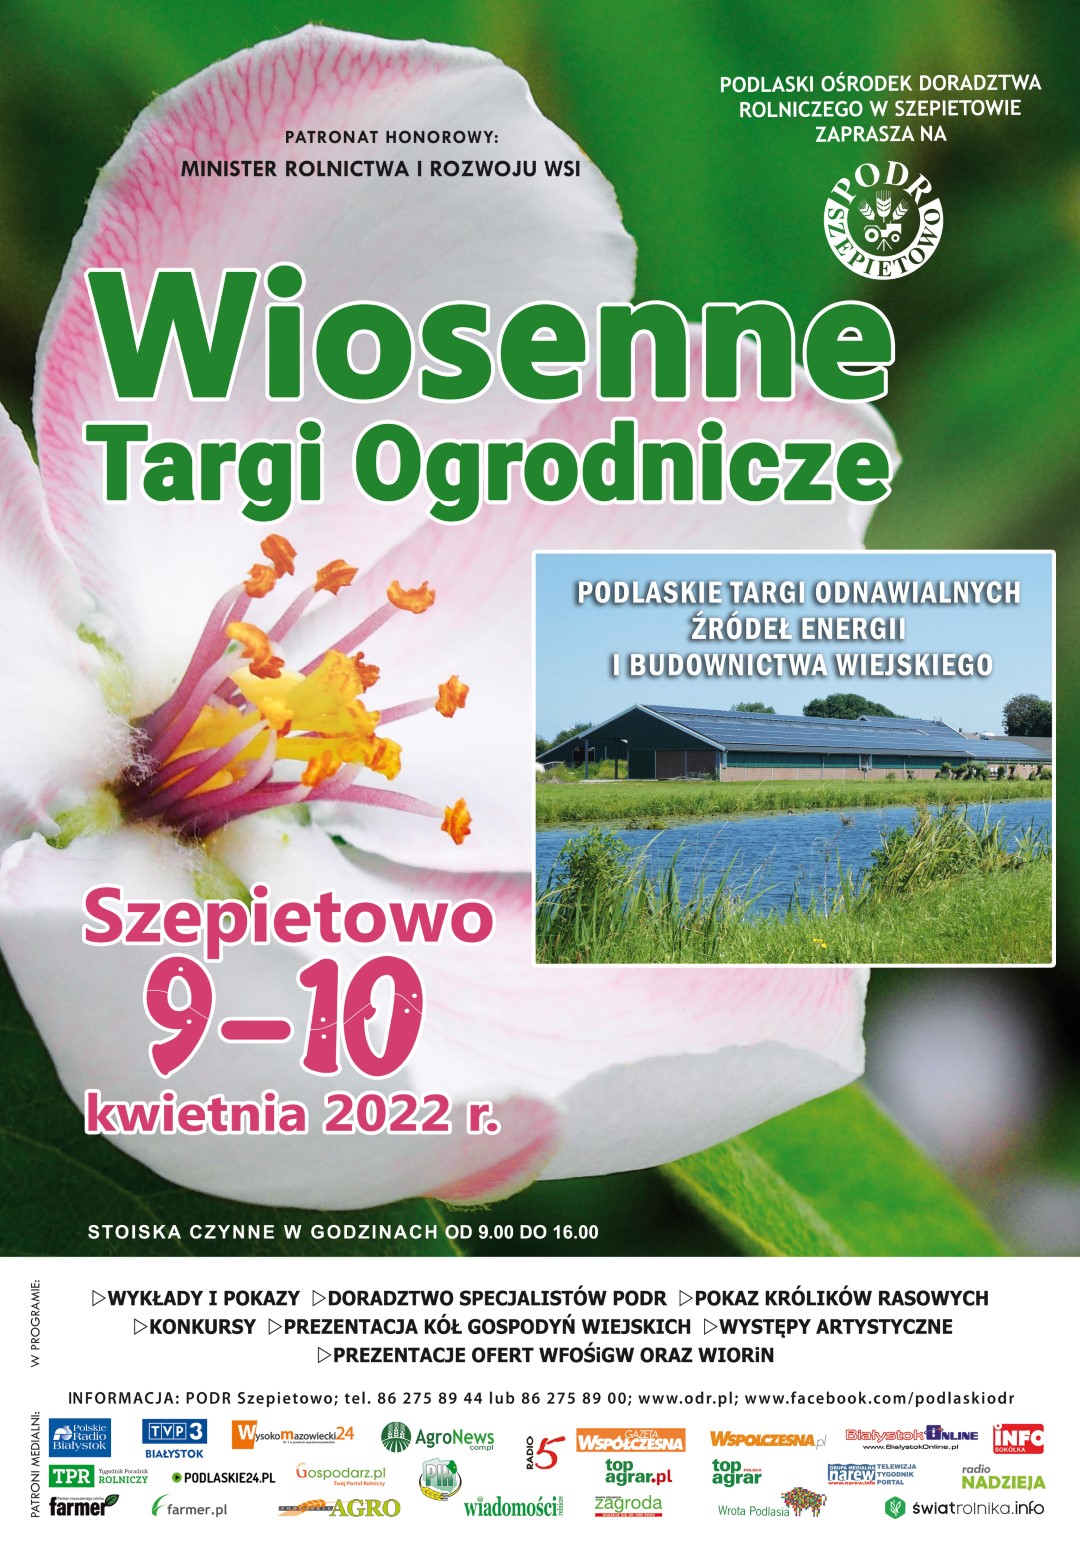 Wiosenne Targi Ogrodnicze Szepietowo 9-10.04.2022r.